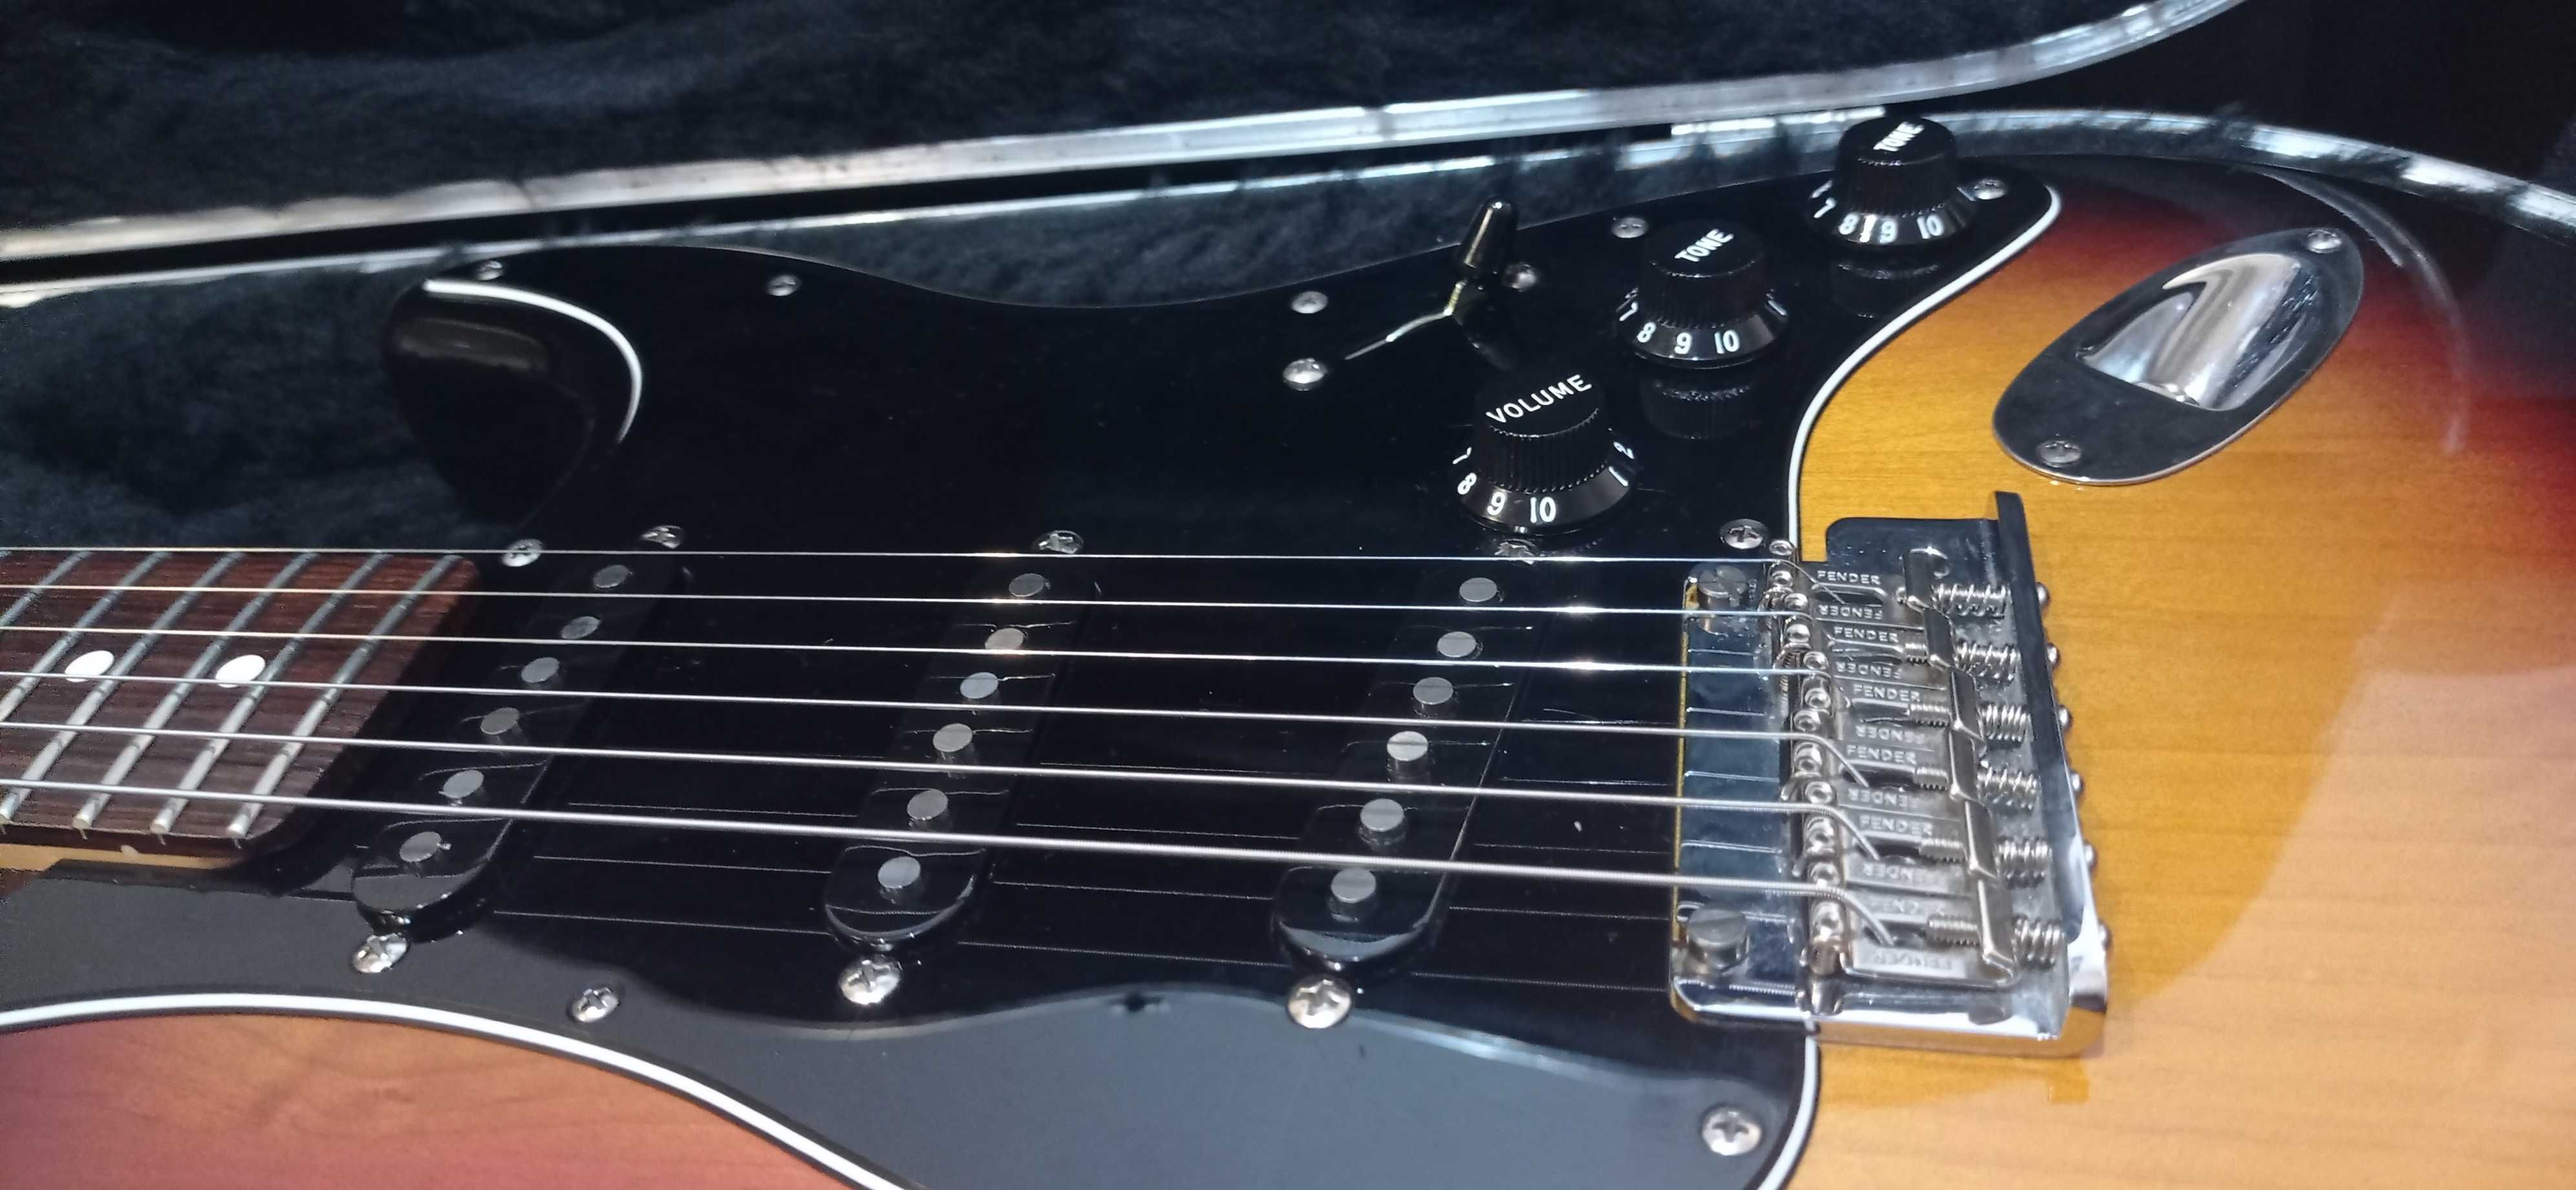 Fender American Standard Stratocaster Sunburst 2008